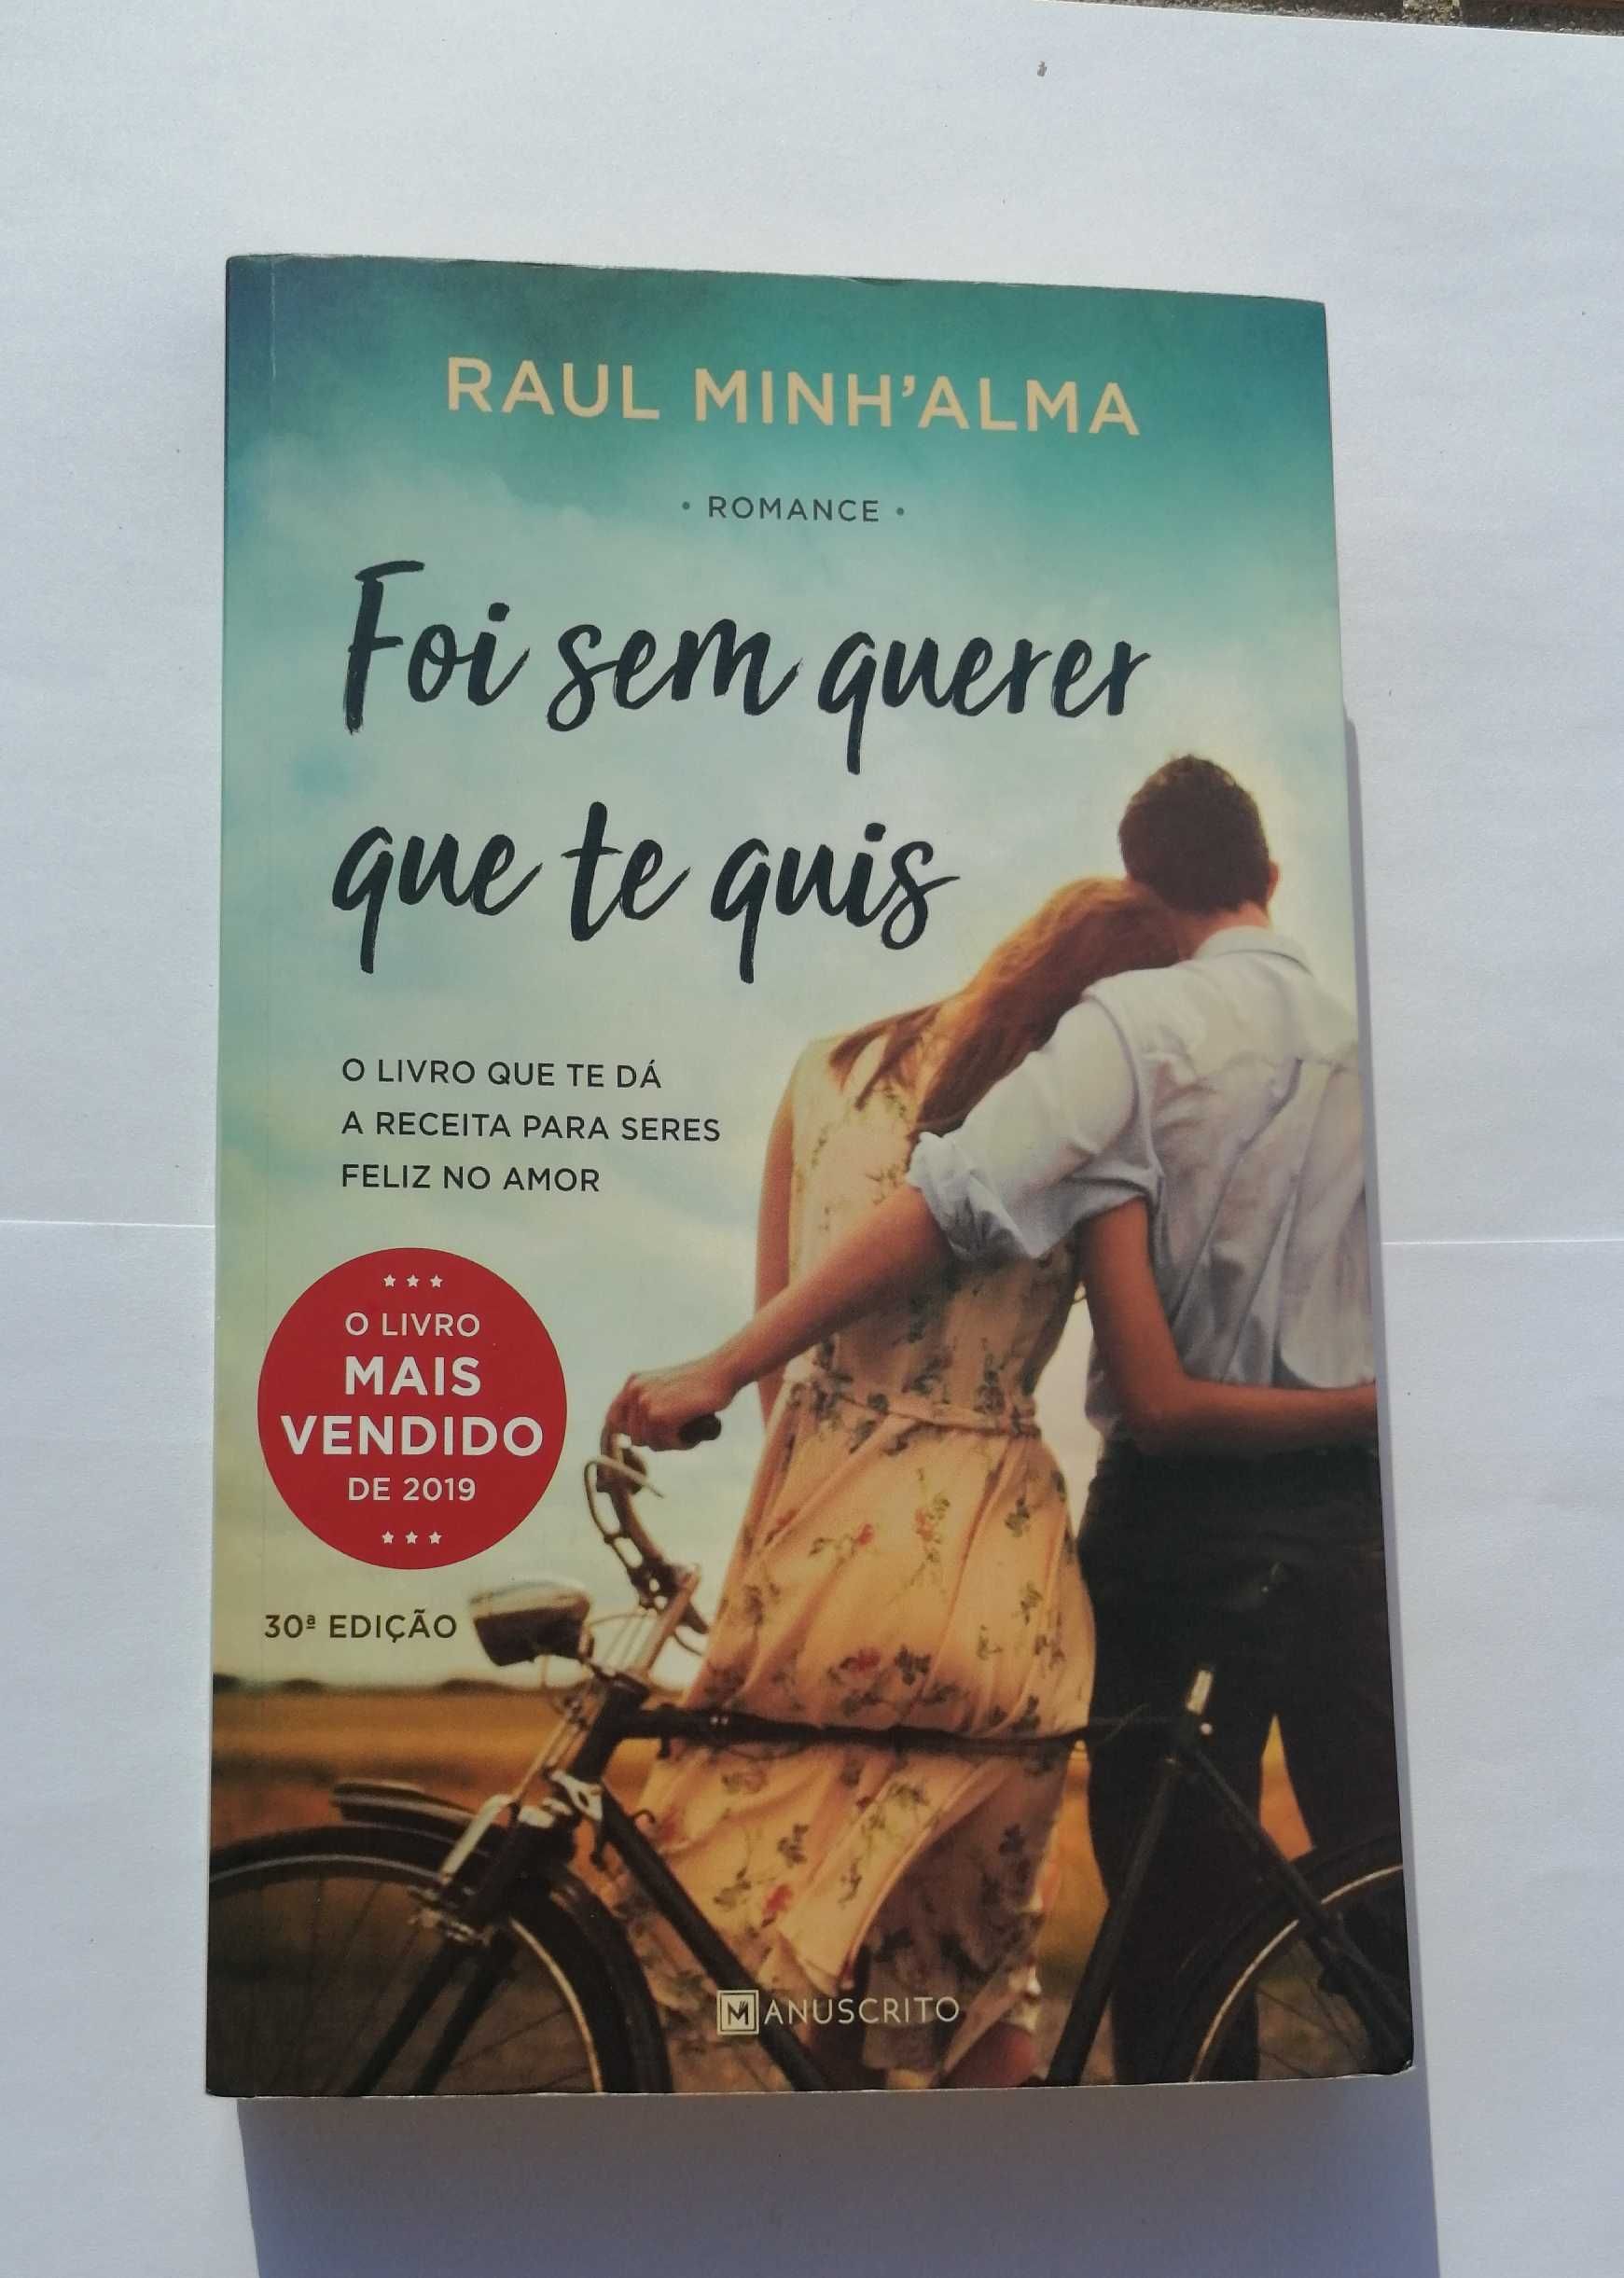 Livro "Foi sem querer que te quis" - Raul Minh'alma